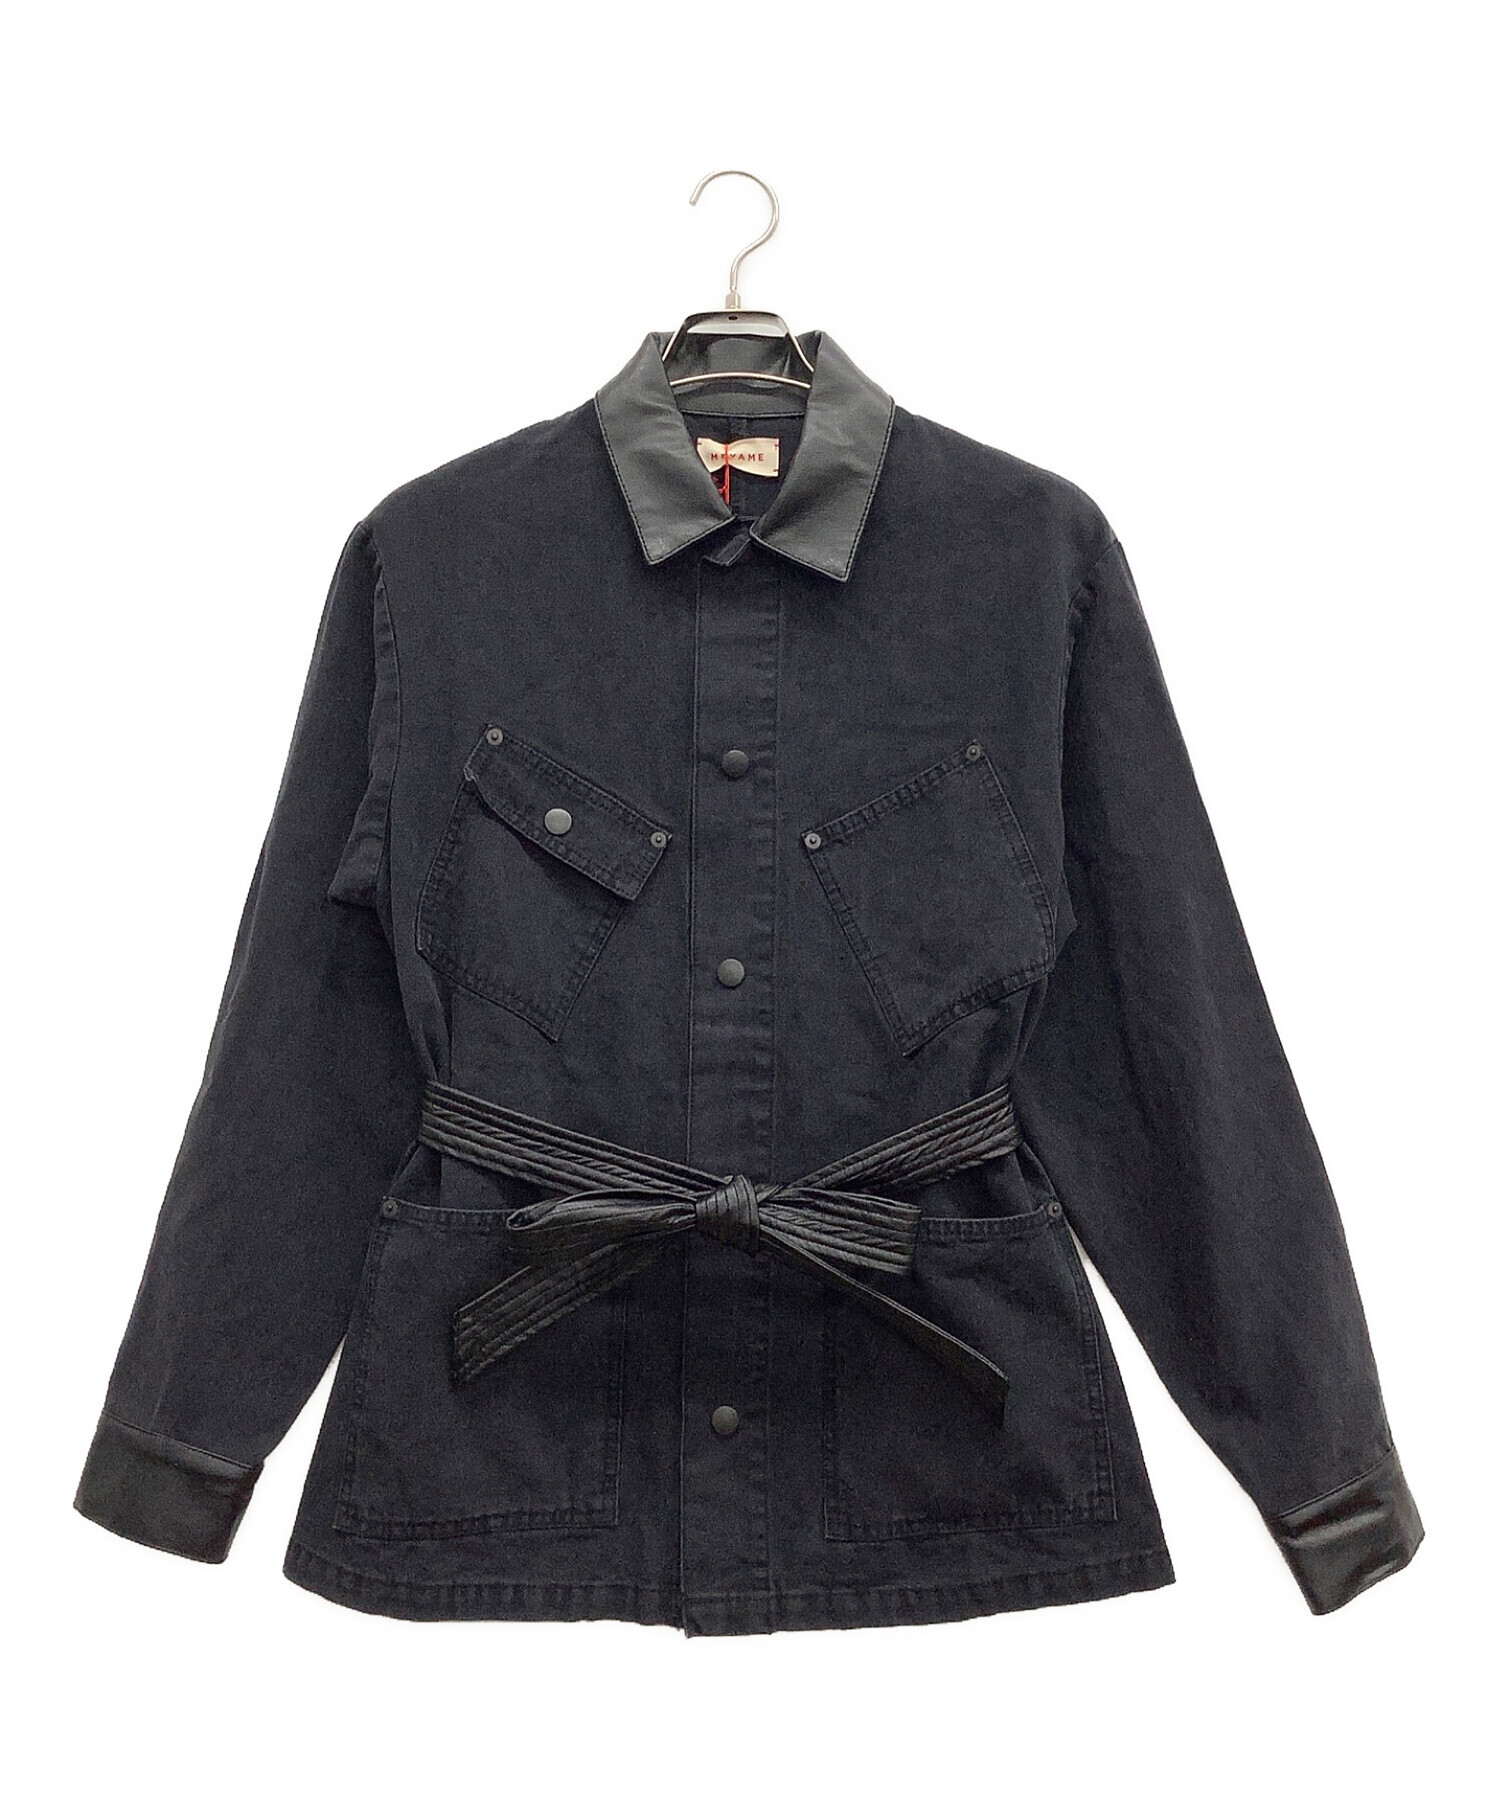 MEYAME (メヤメ) ダックジャケット ブラック サイズ:FREE 未使用品